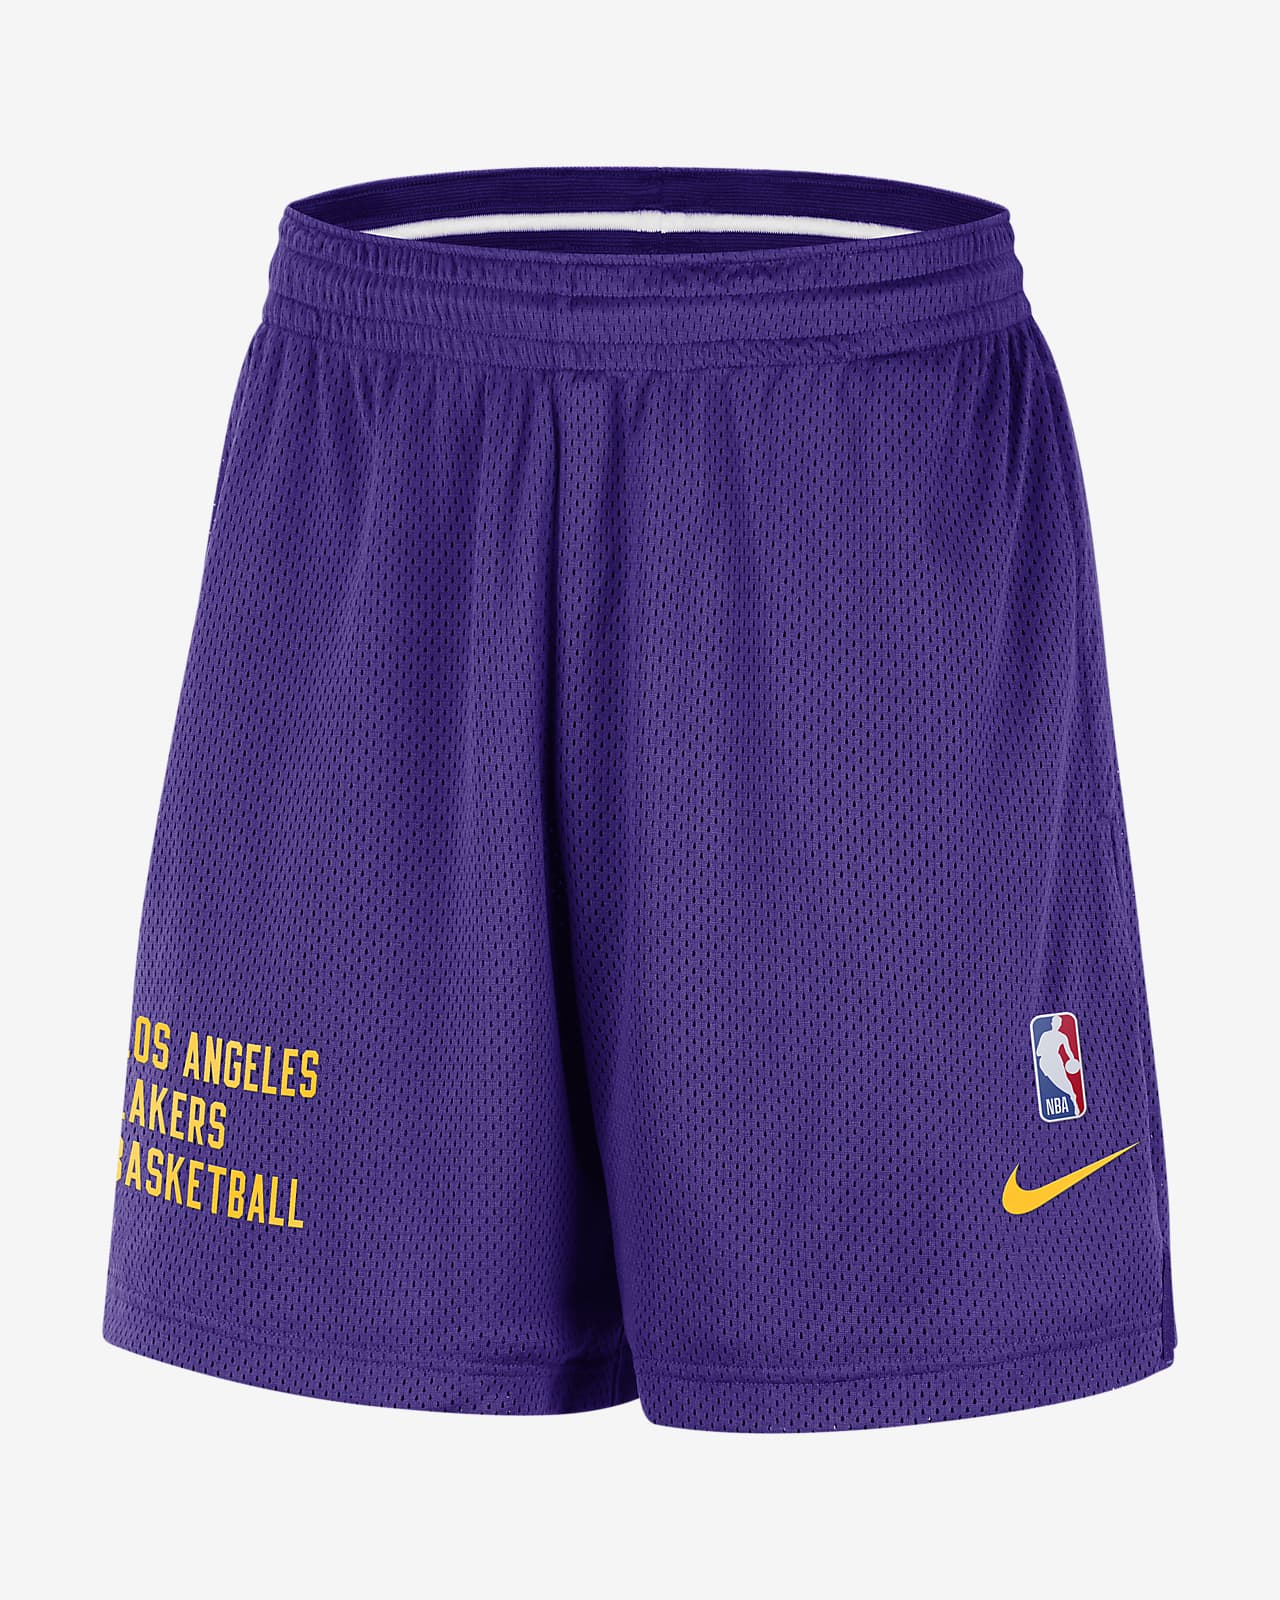 Ανδρικό σορτς Nike NBA από διχτυωτό υλικό Λος Άντζελες Λέικερς